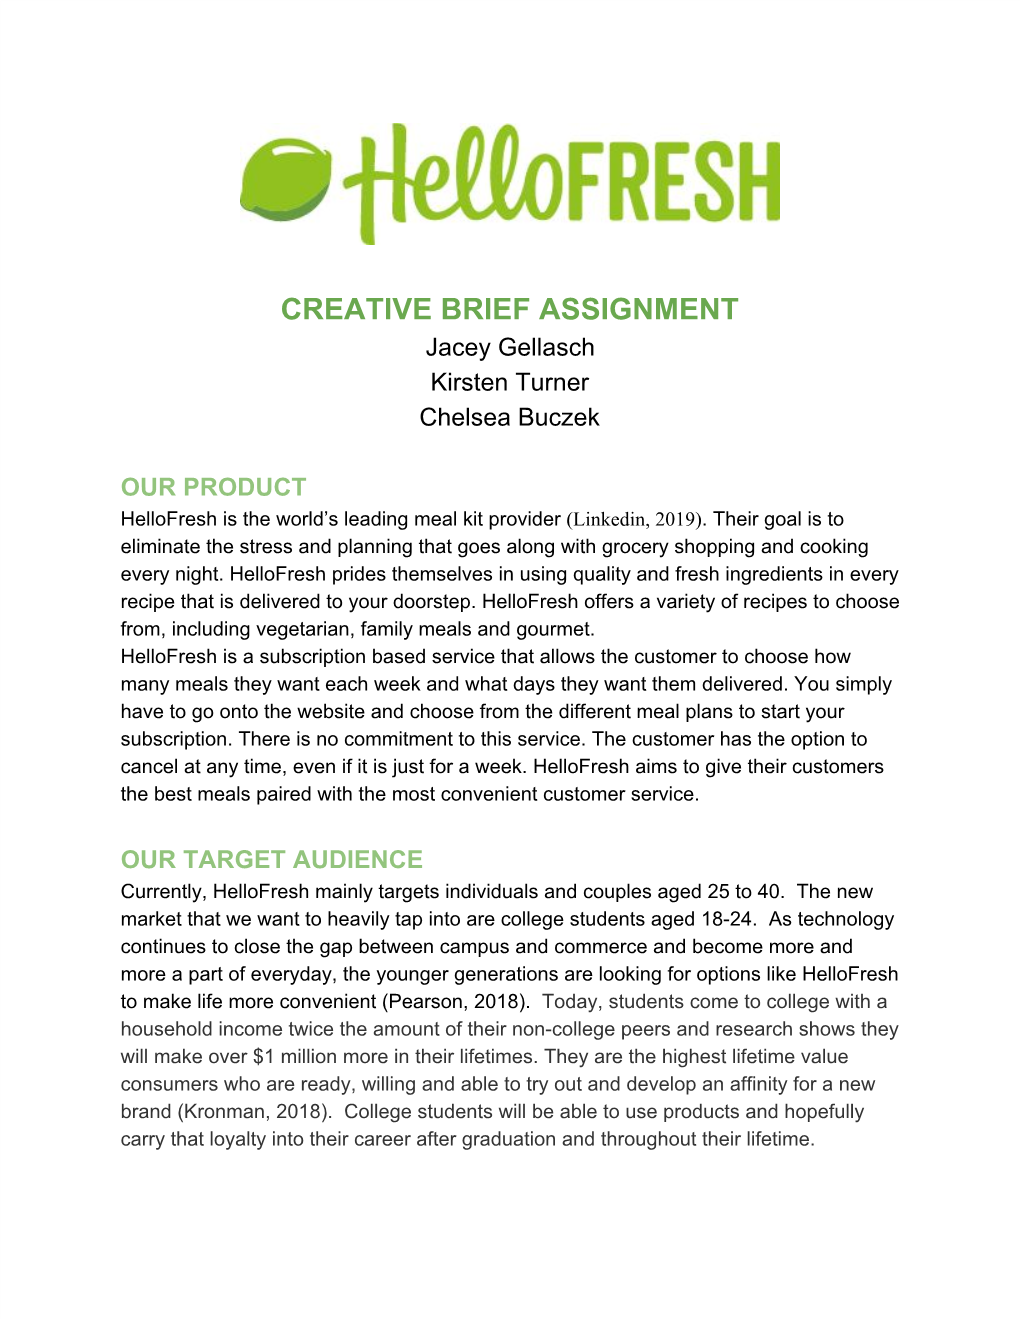 Hellofresh Creative Brief